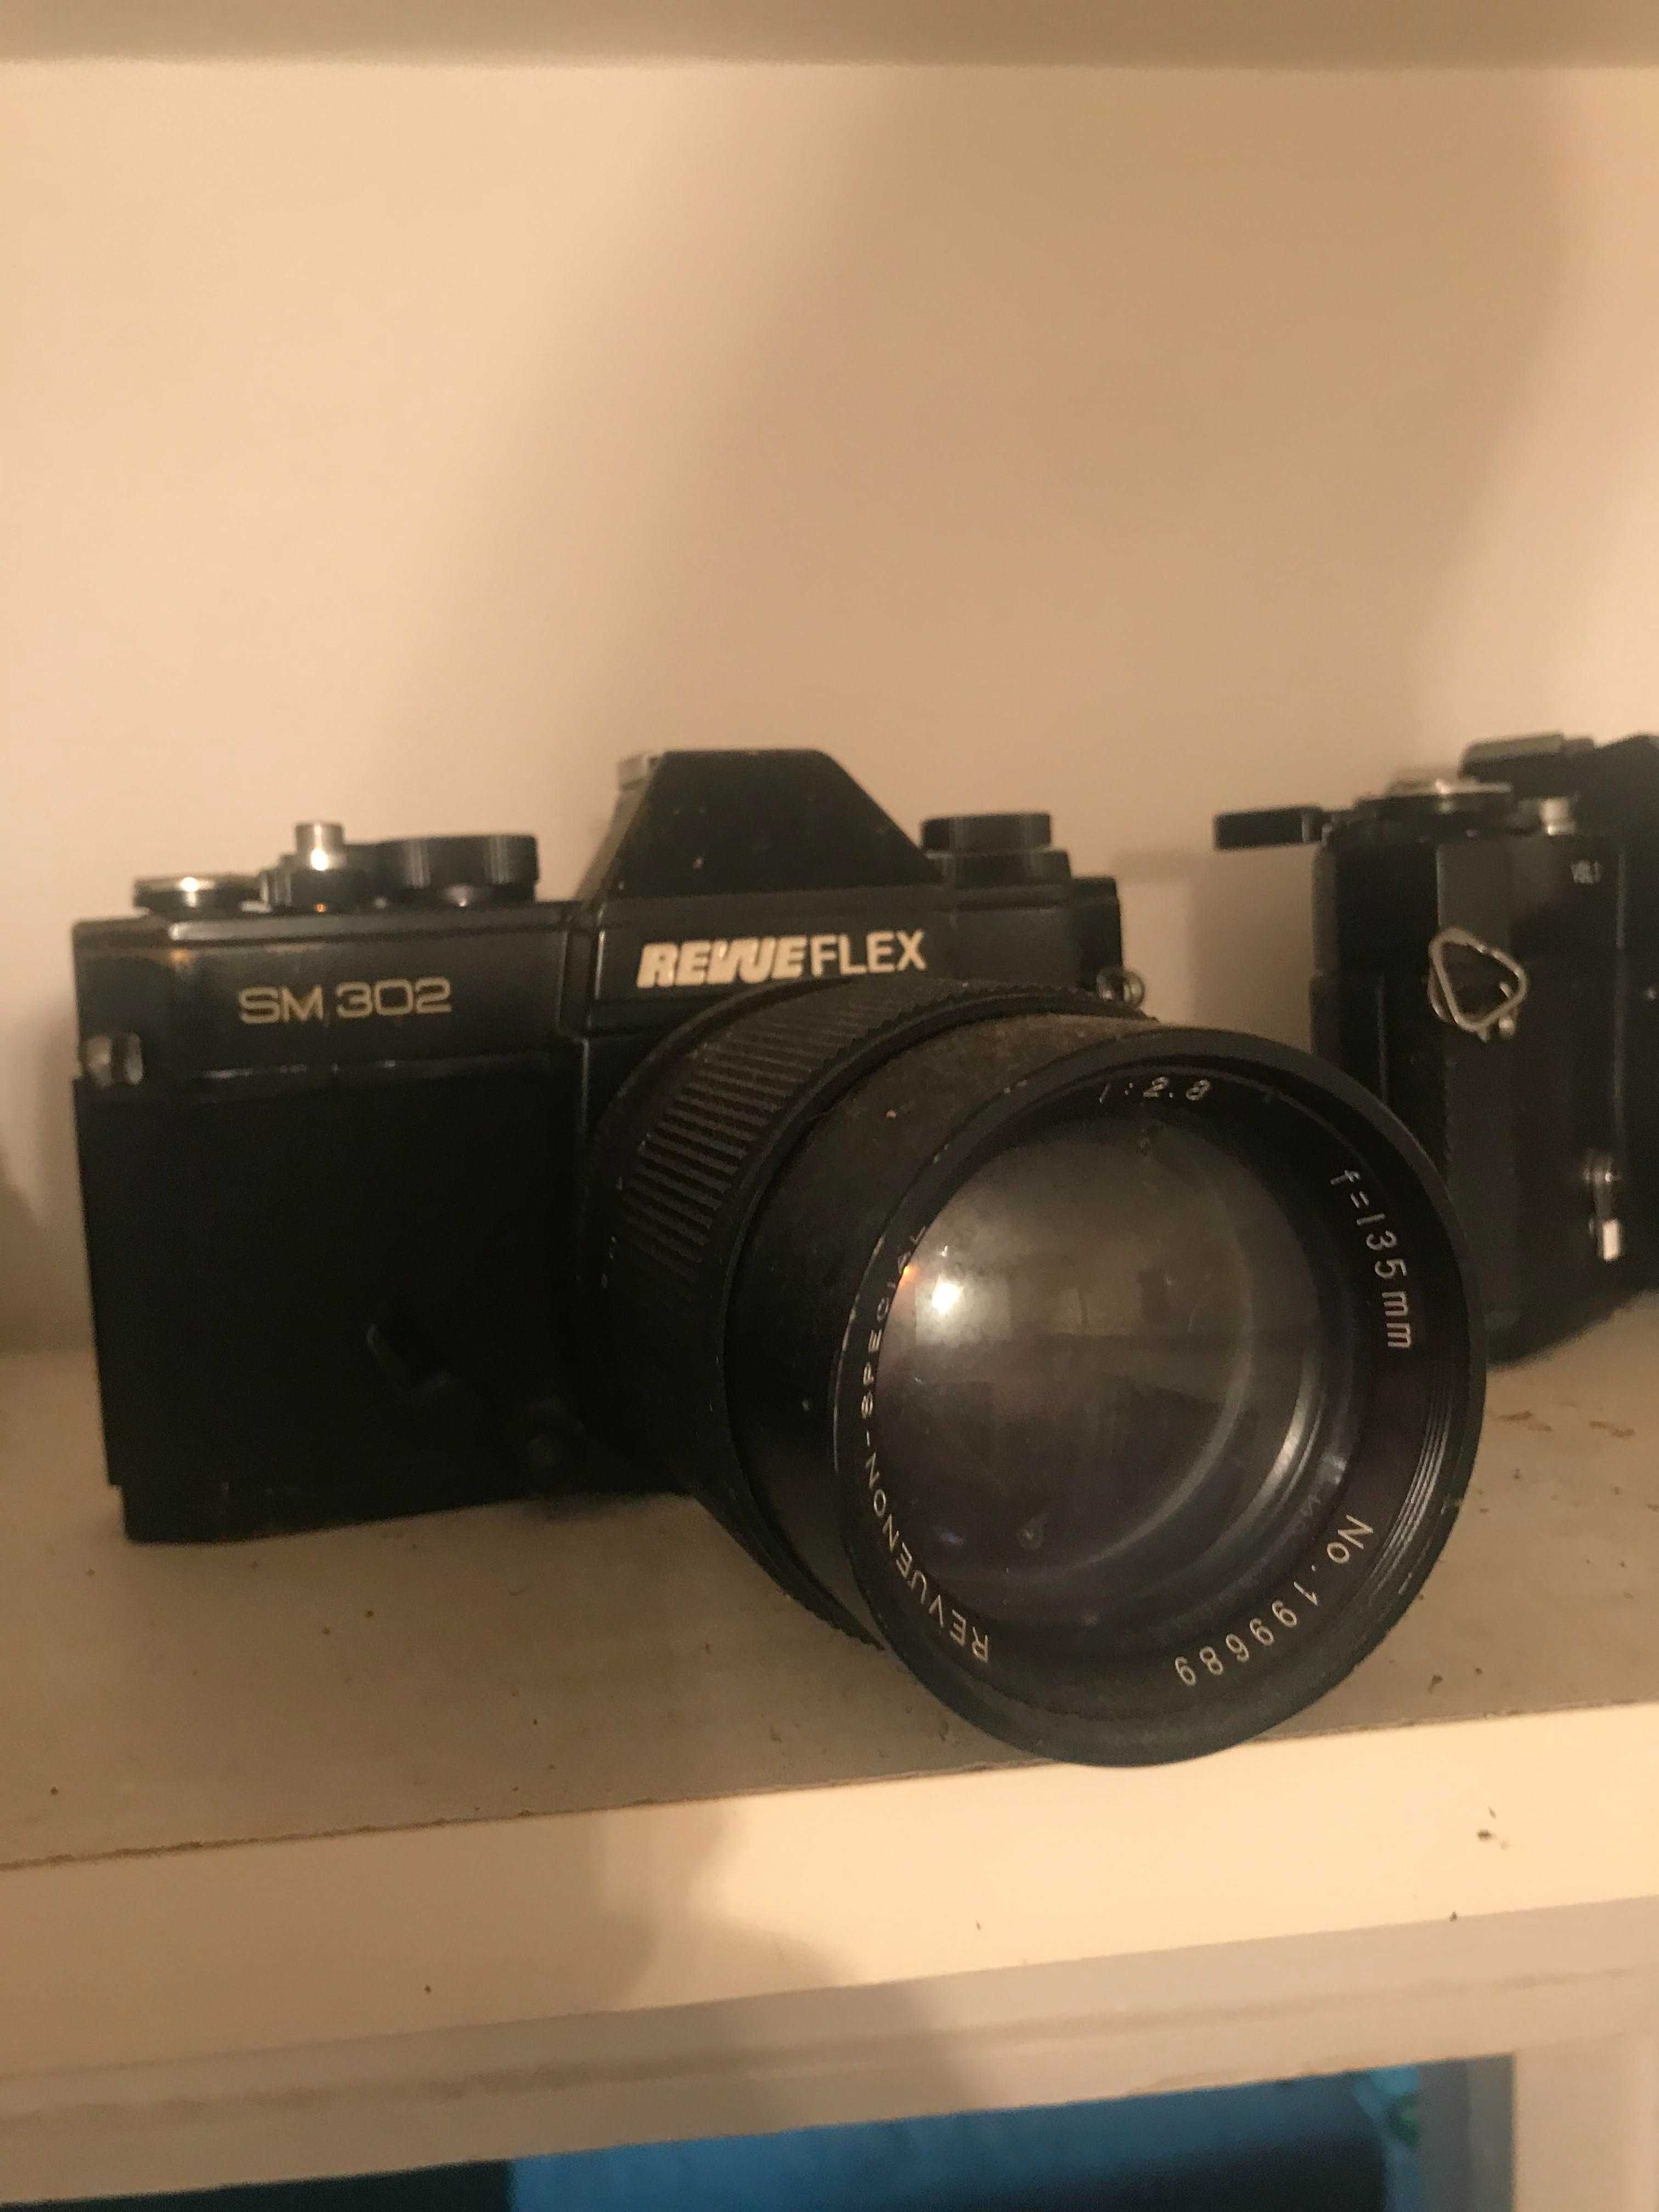 Aparat foto vintage RevueFlex cu obiectiv M42 Revue 35 mm